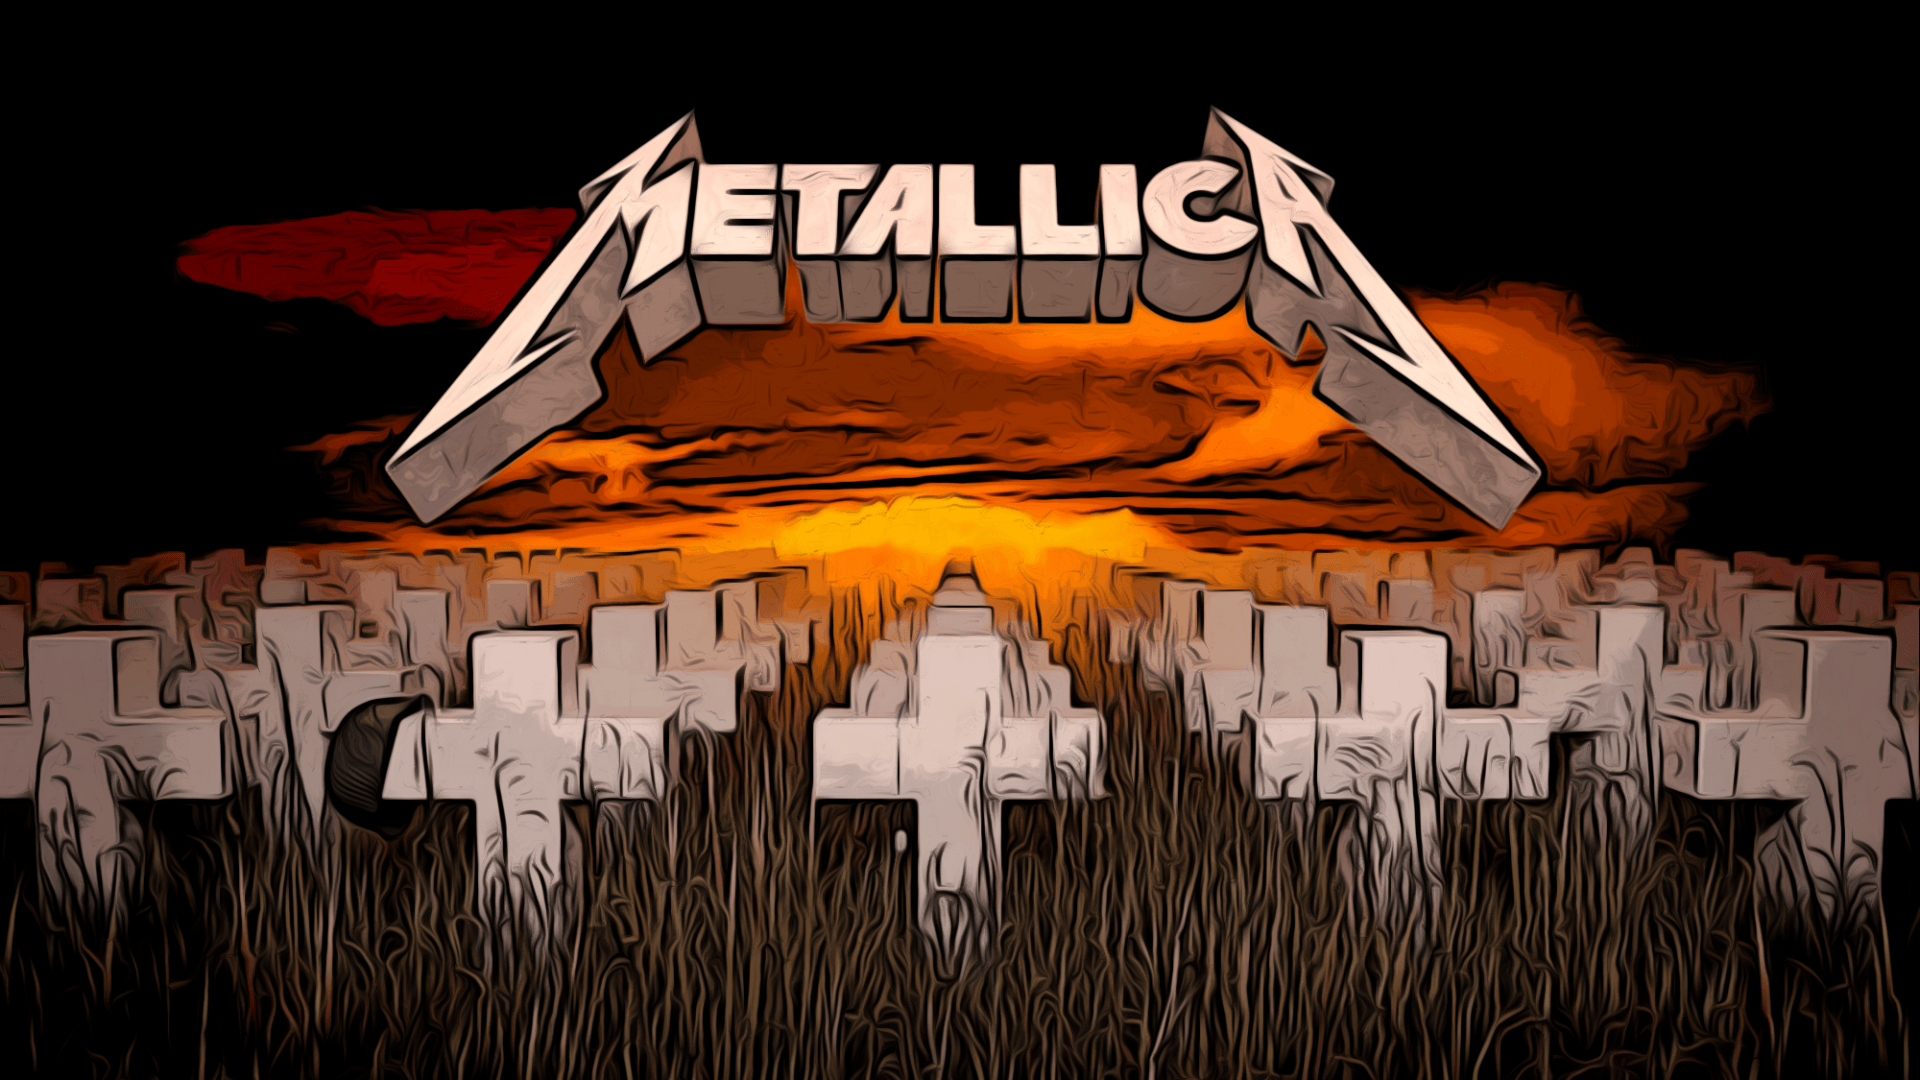 Metallica wallpaper by VoodooBunny  Download on ZEDGE  5180